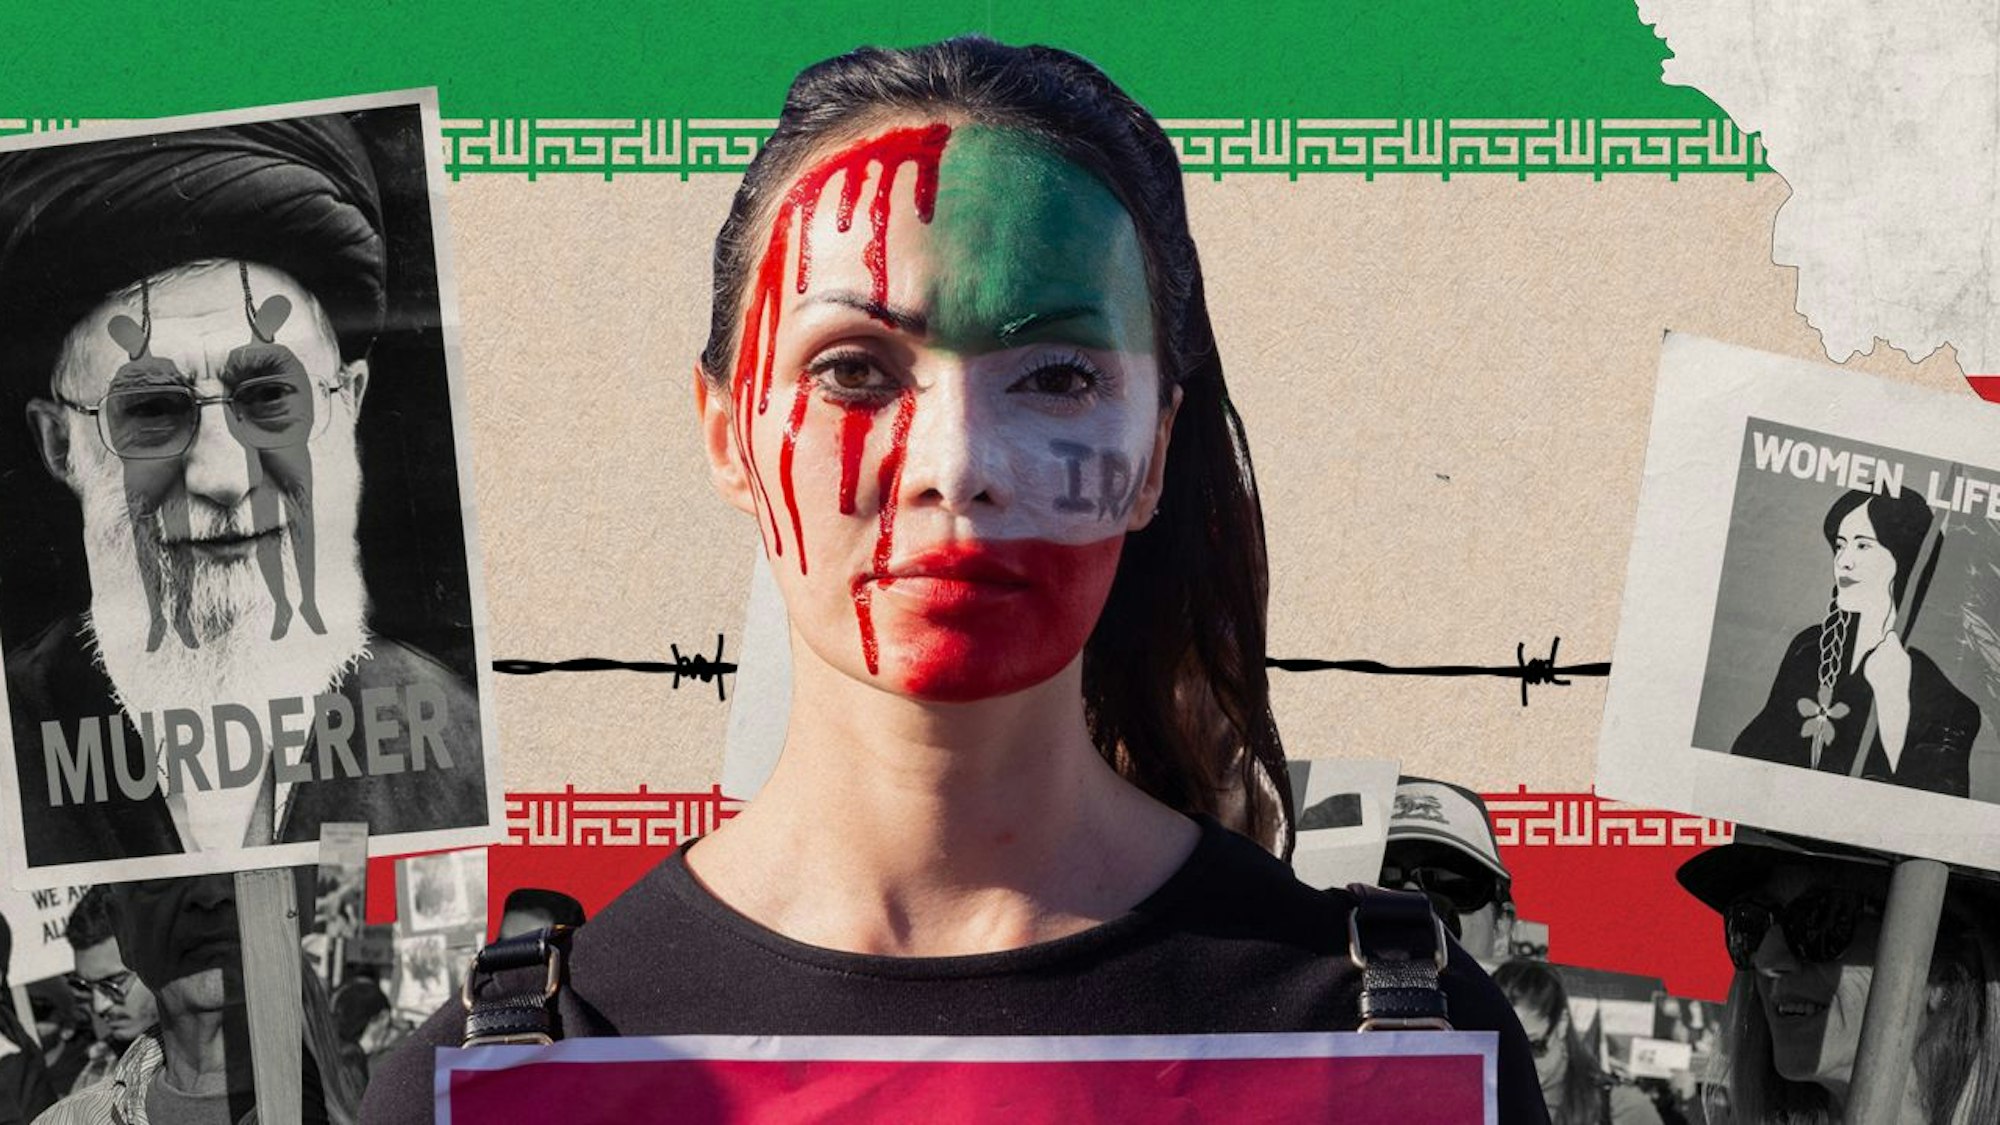 In der Mitte der Montage ist eine Teilnehmerin einer Solidaritätsdemonstration mit einer iranischen Flagge und rotem Blut geschminkt. Im Hintergrund ist die iranische Flagge. Neben der Frau sind Schilder. Eins mit einer Illustration von Mahsa Amini und der Aufschrift „Women Life Freedom“. Das andere Schild zeigtAli Chamenei, über den zwei erhängte Menschen illustriert sind und die Aufschrift „Murderer“ steht.